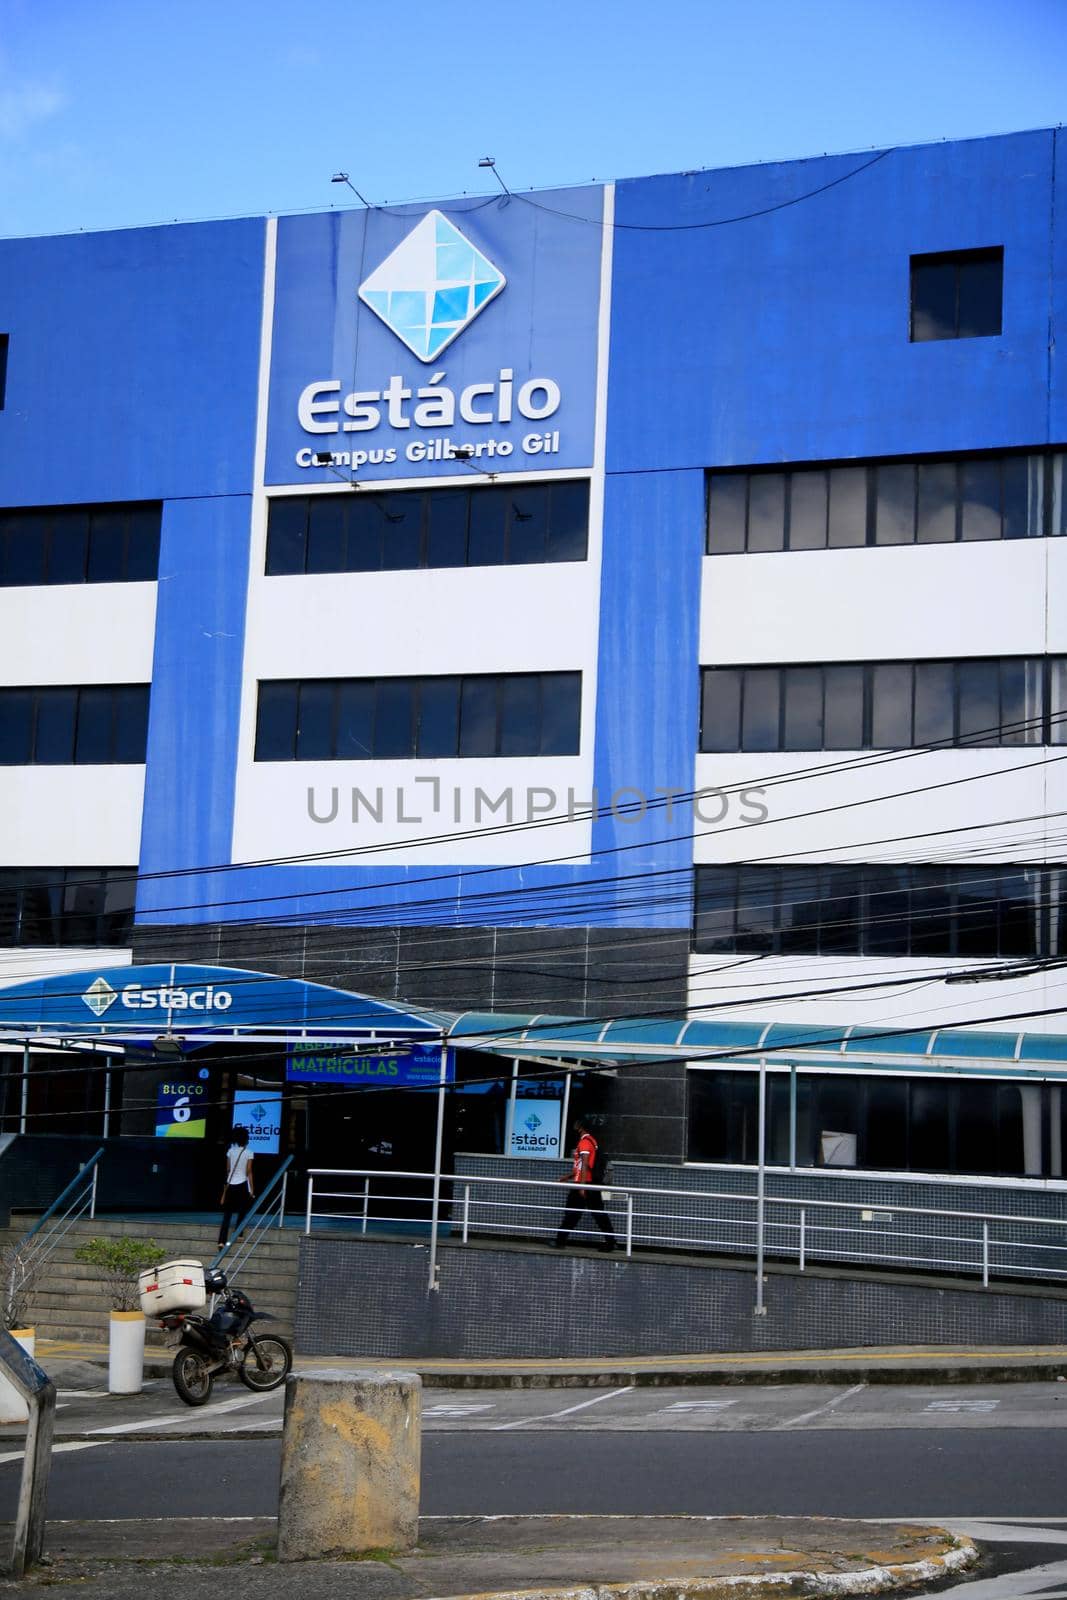 Estacio University - FIB in Salvador by joasouza